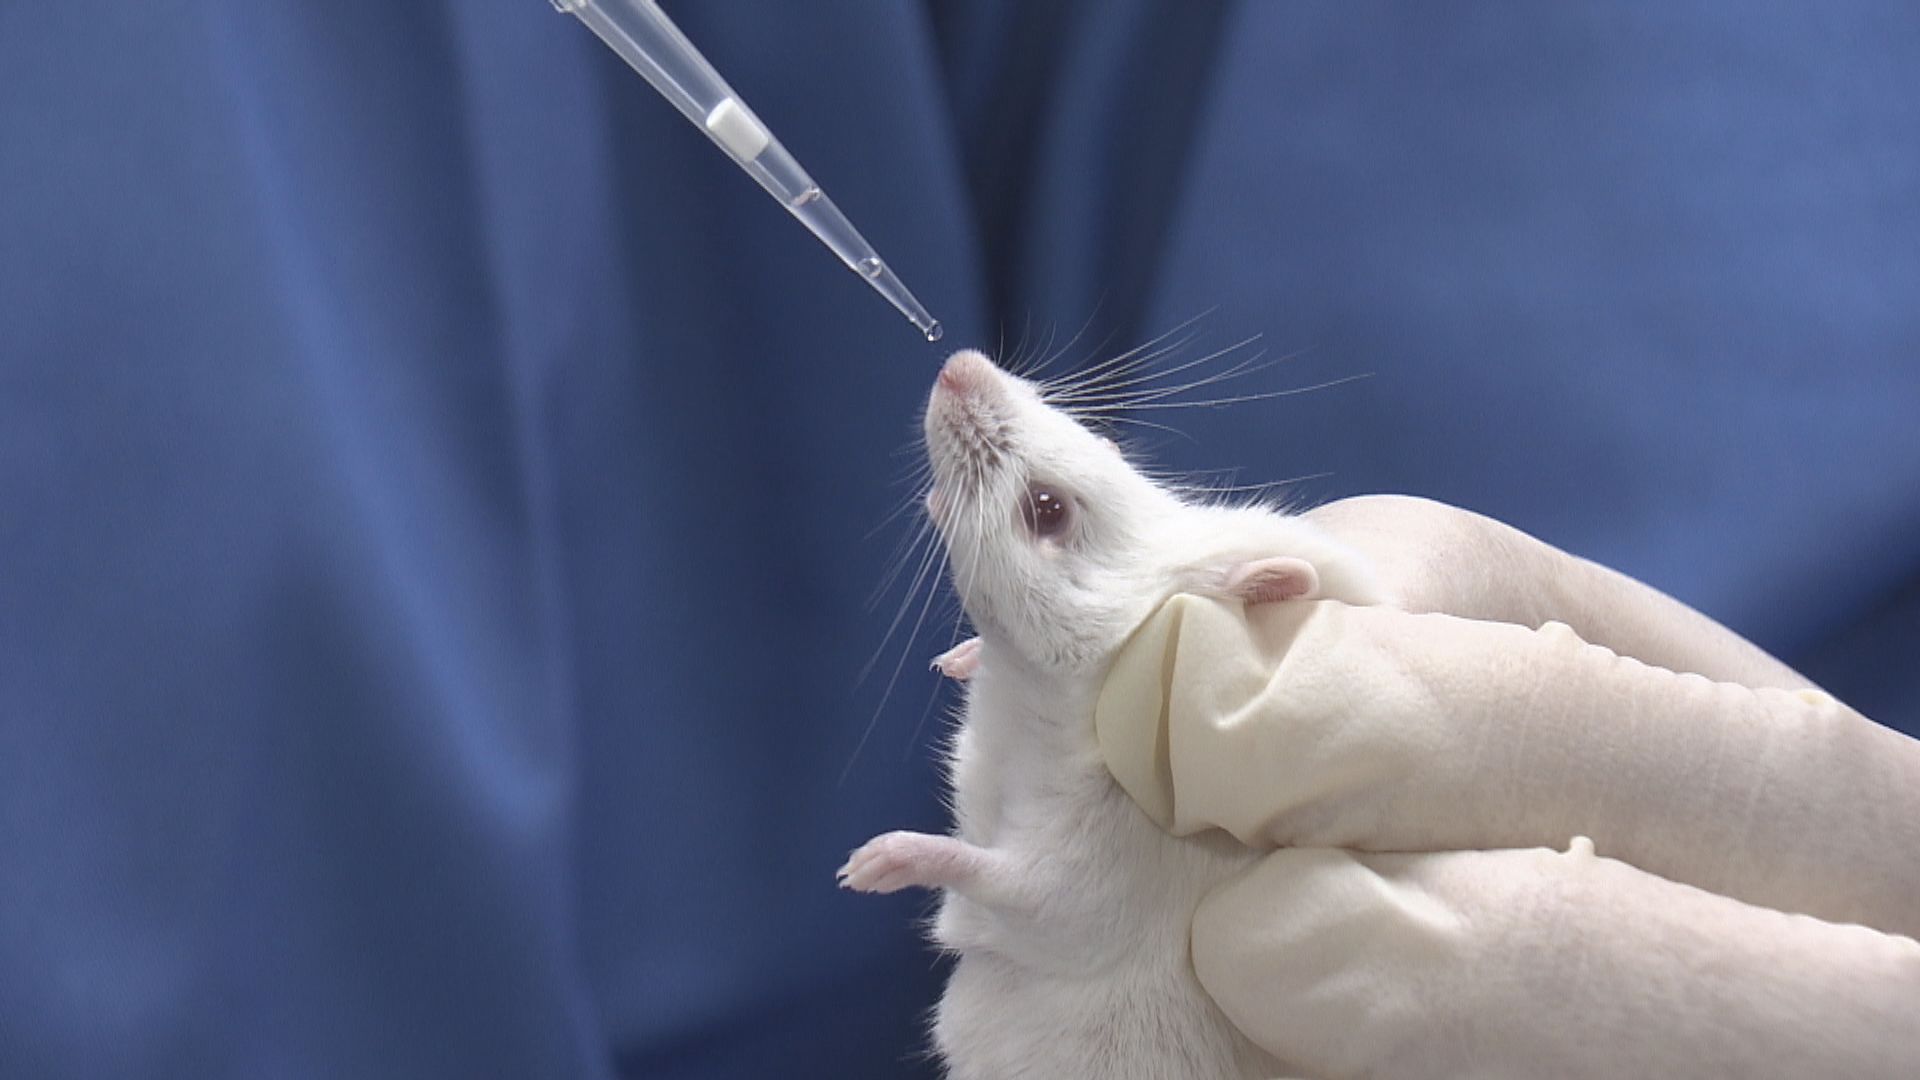 瑞士禁動物及人體實驗公投　近八成人反對被否決